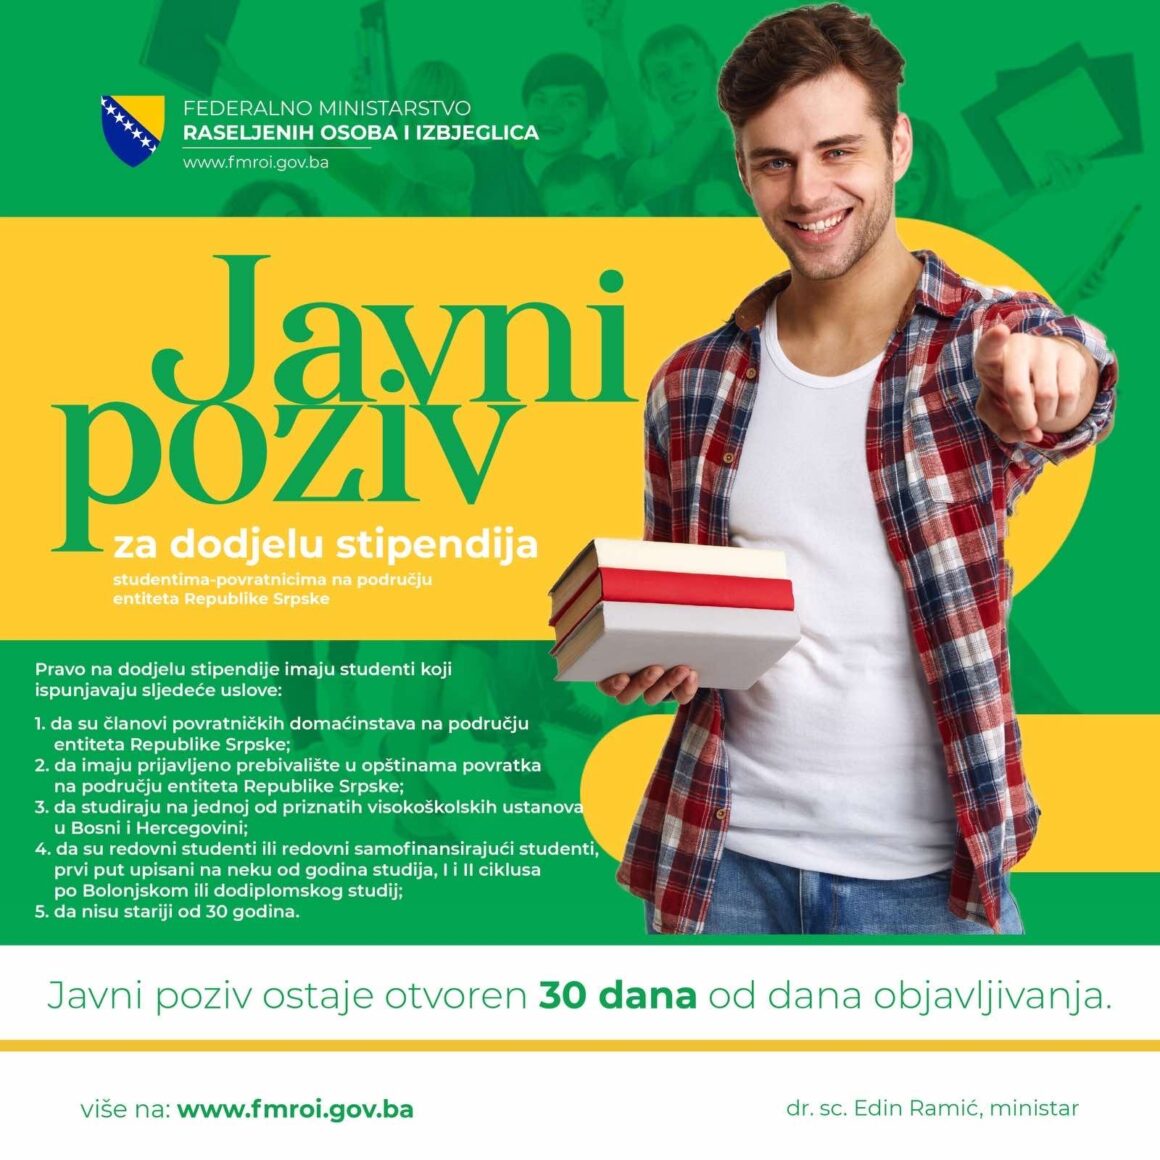 Javni oglas za dodjelu stipendija studentima-povratnicima na području entiteta Republike Srpske